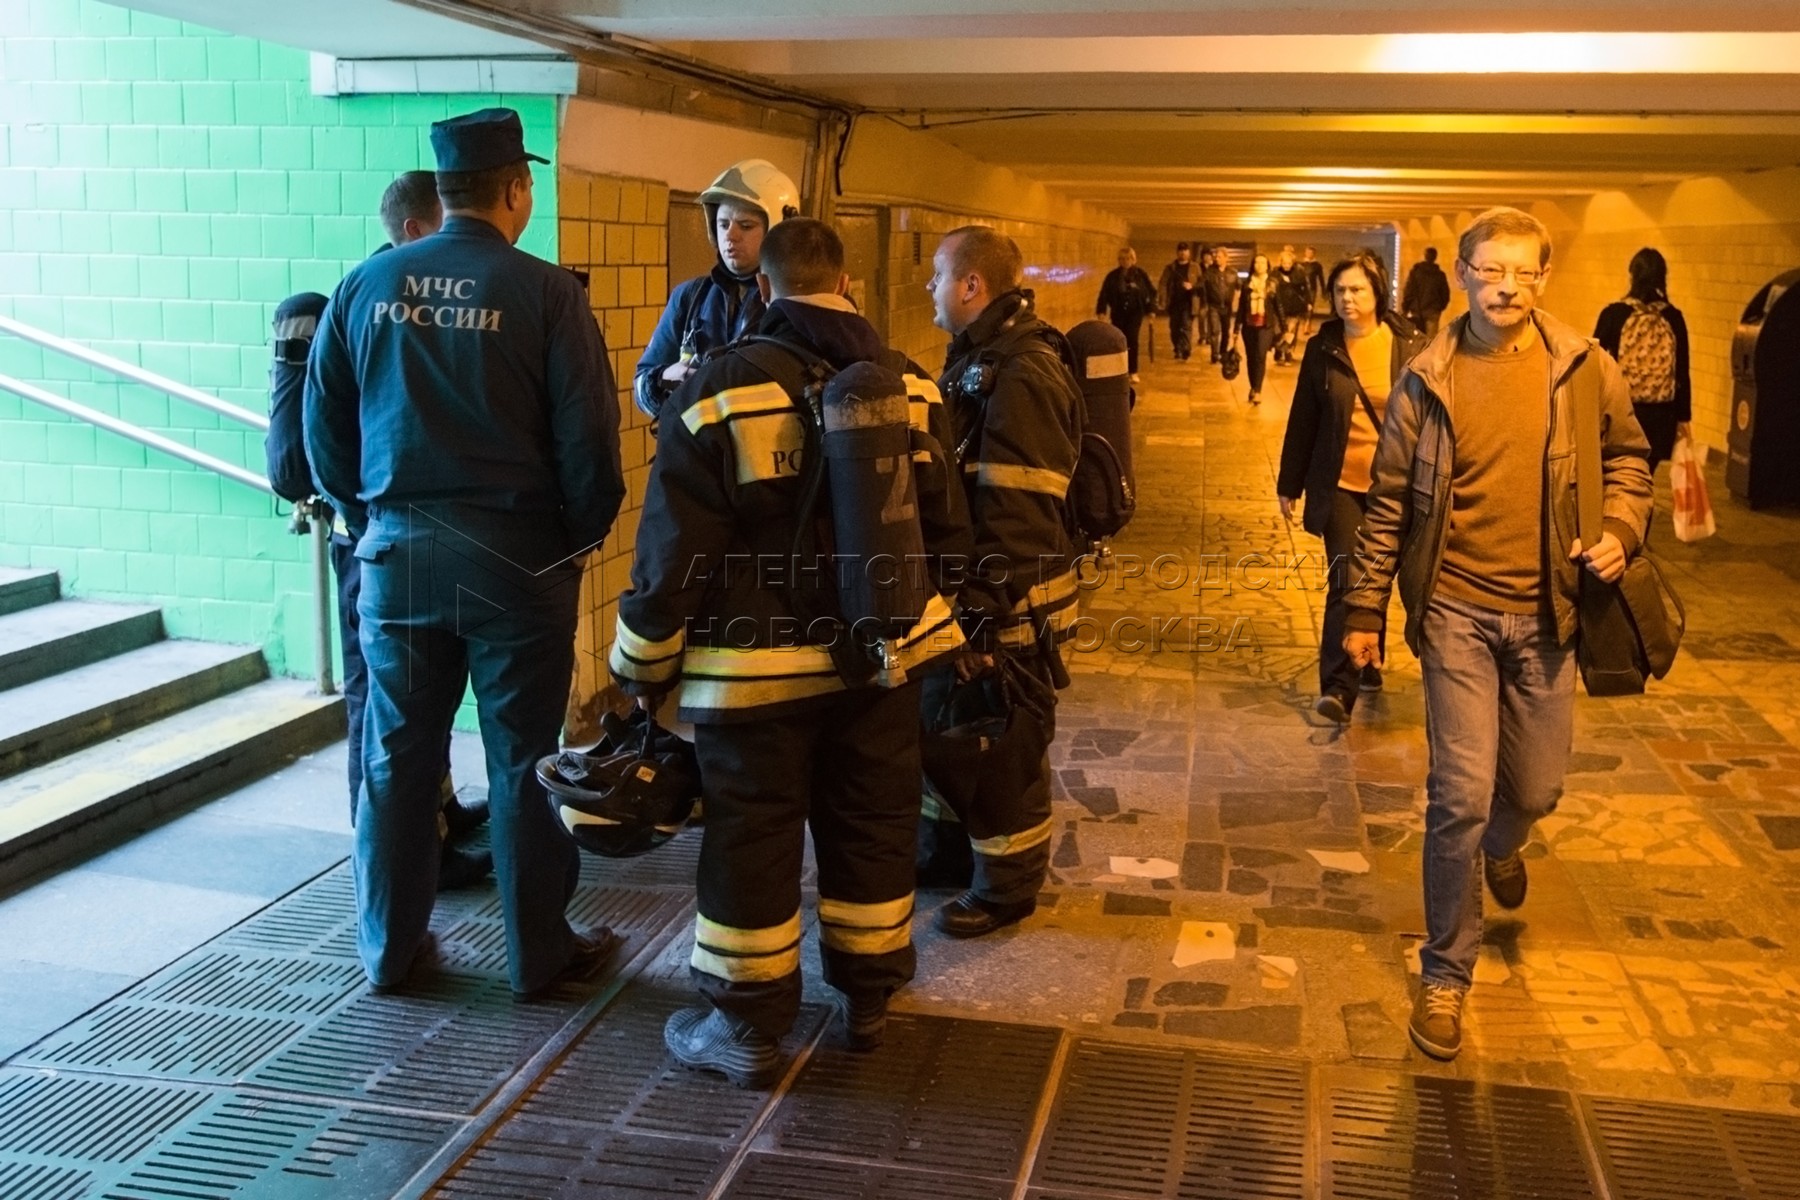 Новости москвы сегодня взрыв в метро. Чкаловская метро взрыв. Последствия теракта в метро. Произошёл теракт на станции метро как правильно спастисть пассажирам.